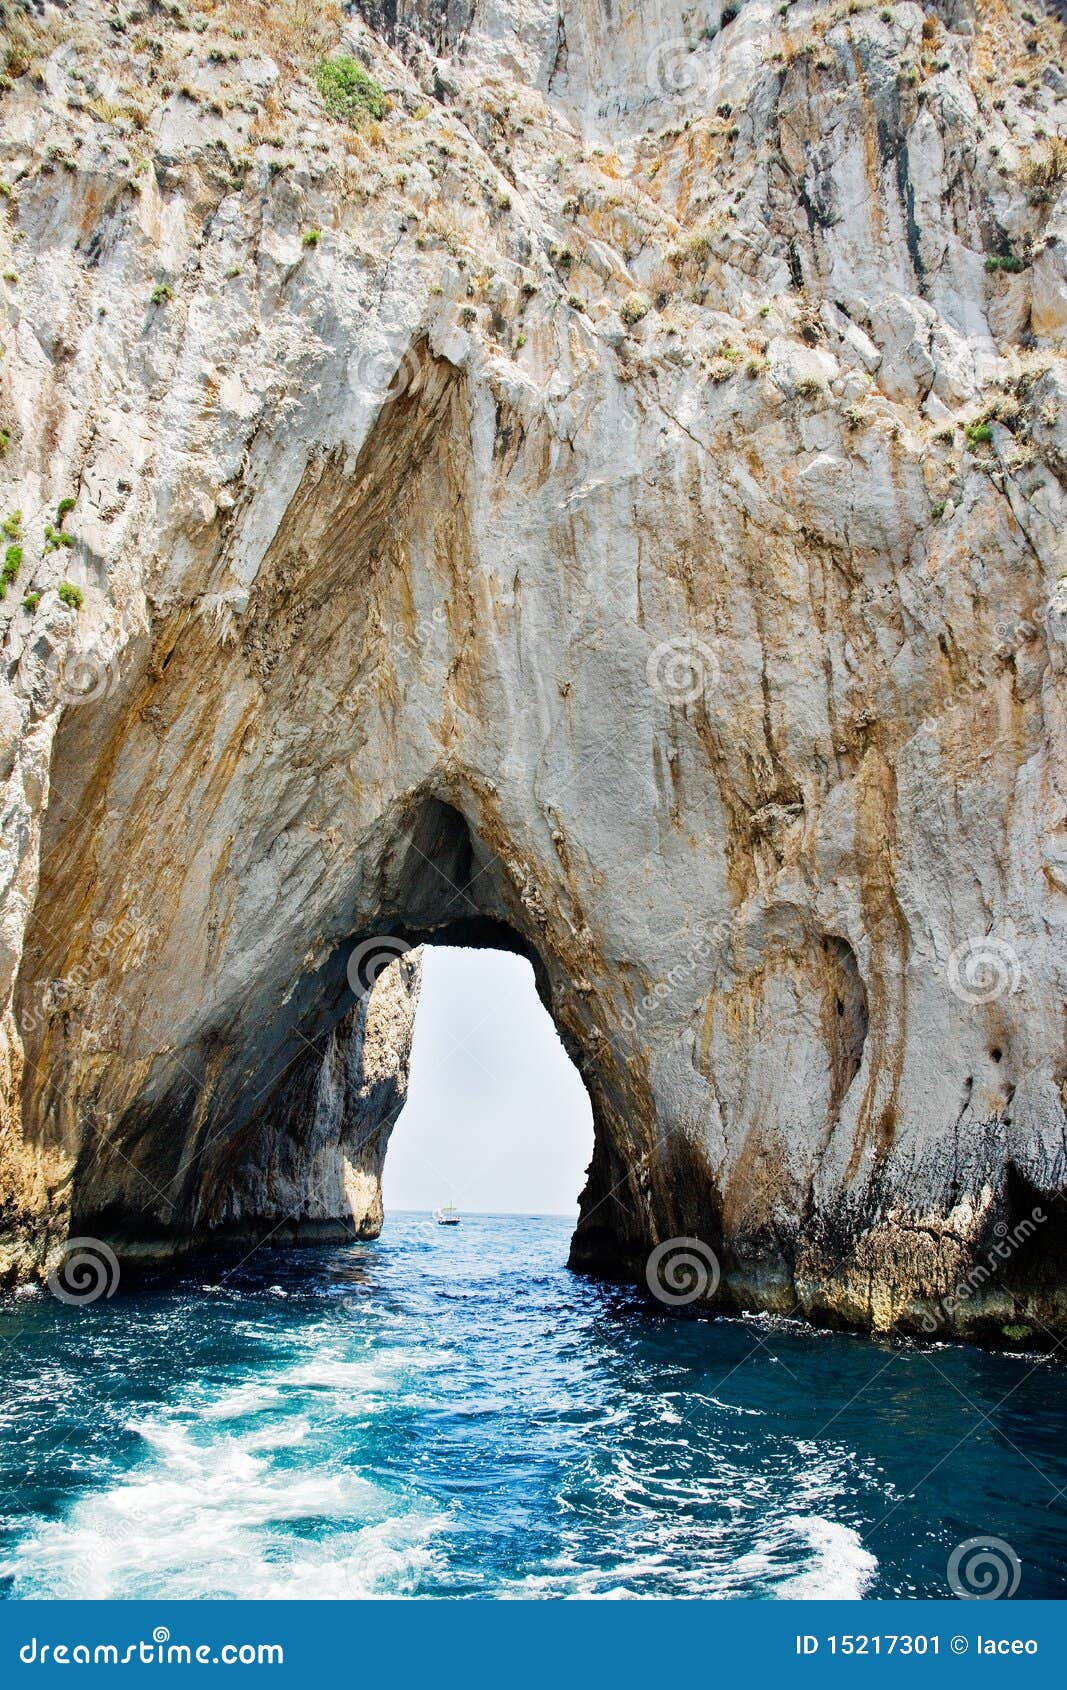 grotto in sea-rock, capri italy.